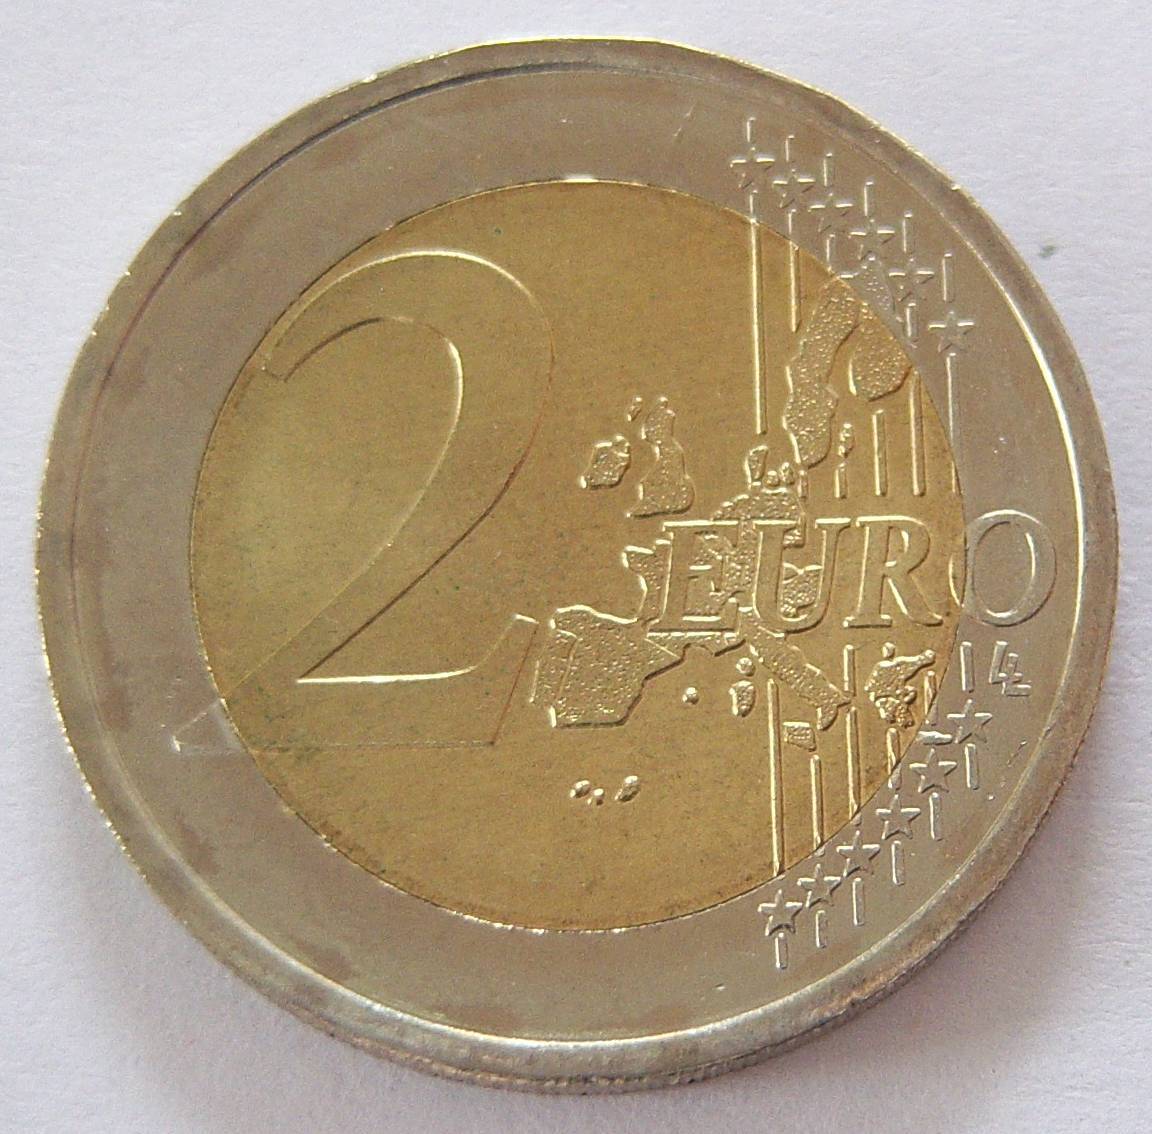  Monaco 2 Euro 2002   